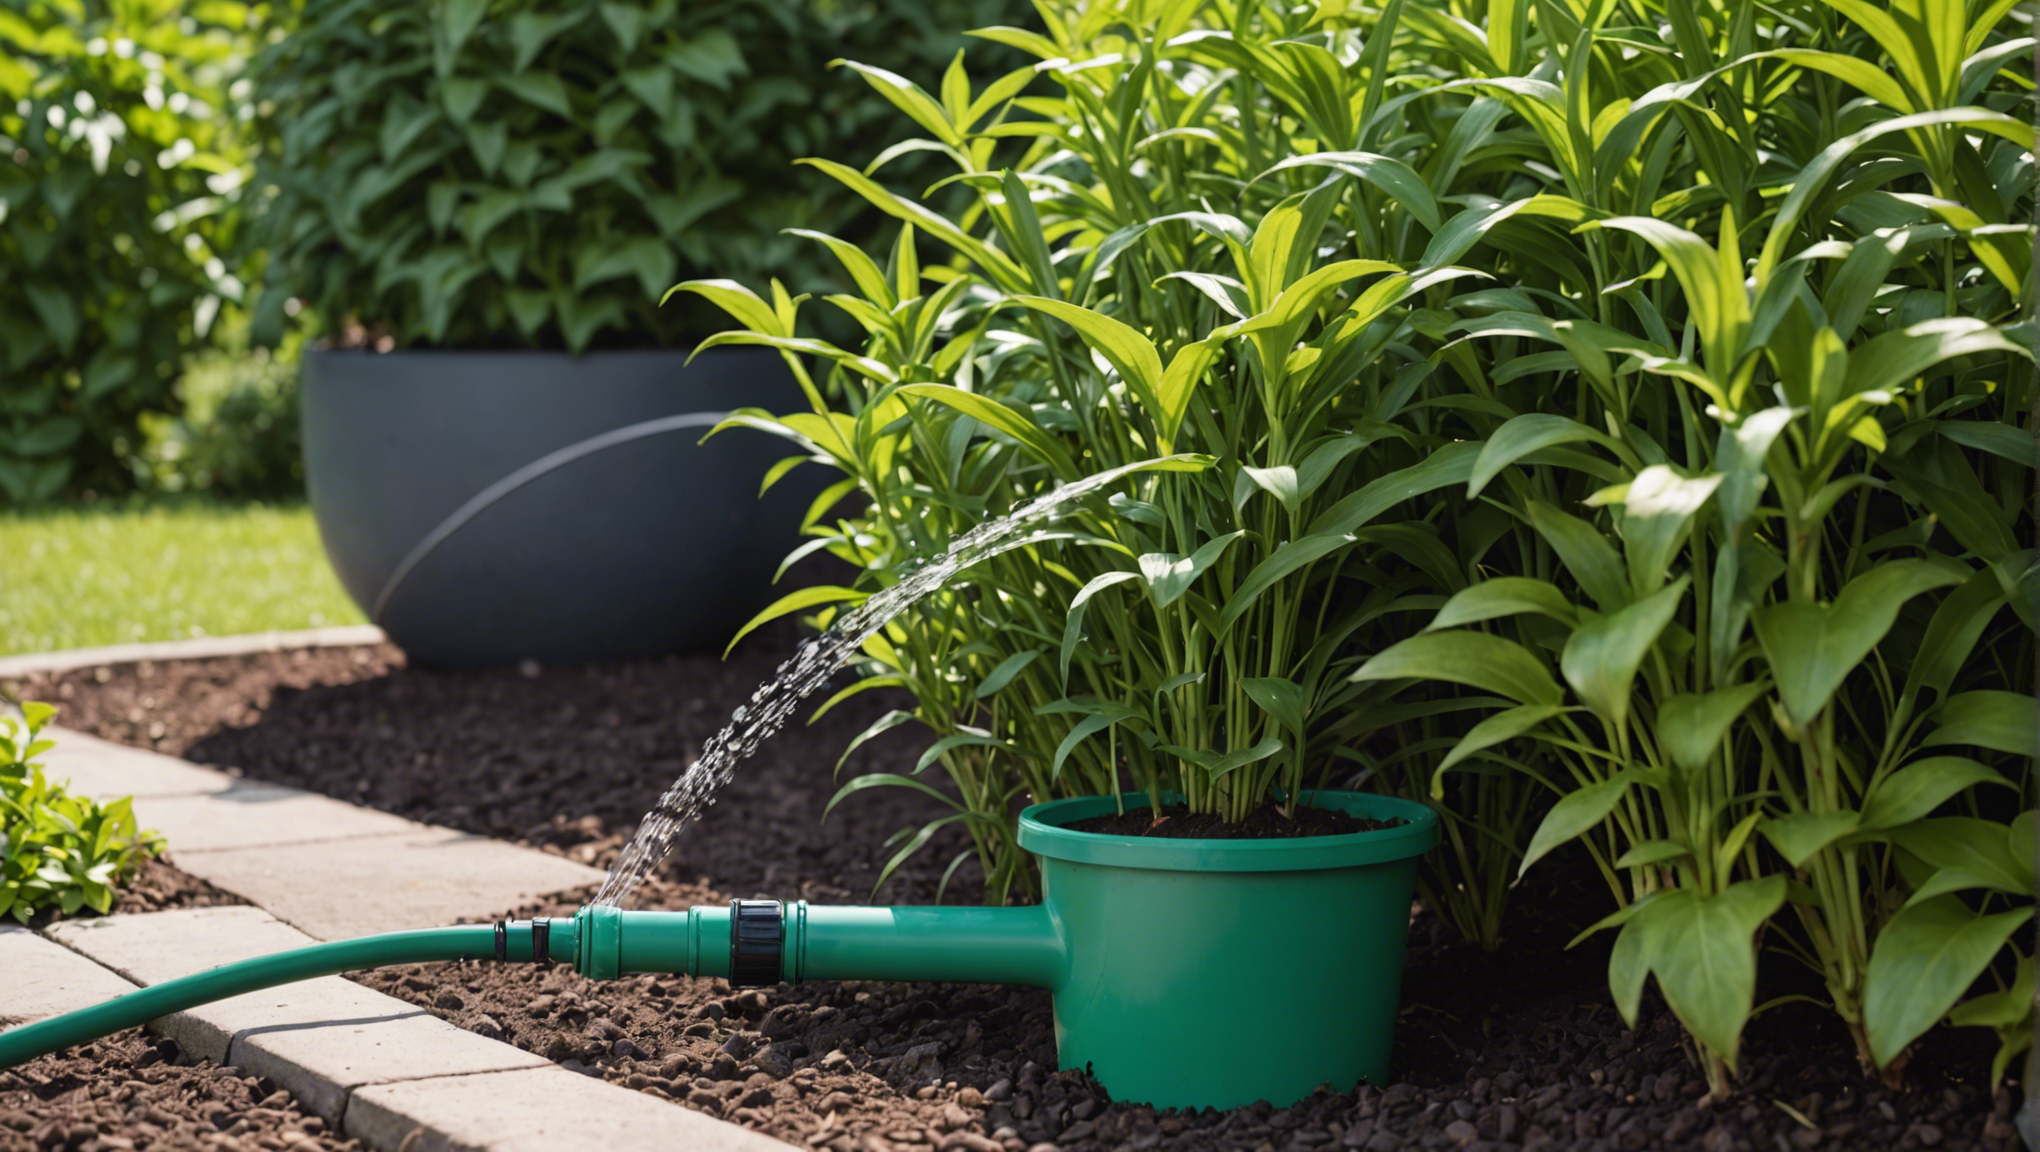 découvrez les avantages d'opter pour un système d'arrosage automatique et simplifiez votre quotidien en prenant soin de votre jardin de manière efficace et économique.